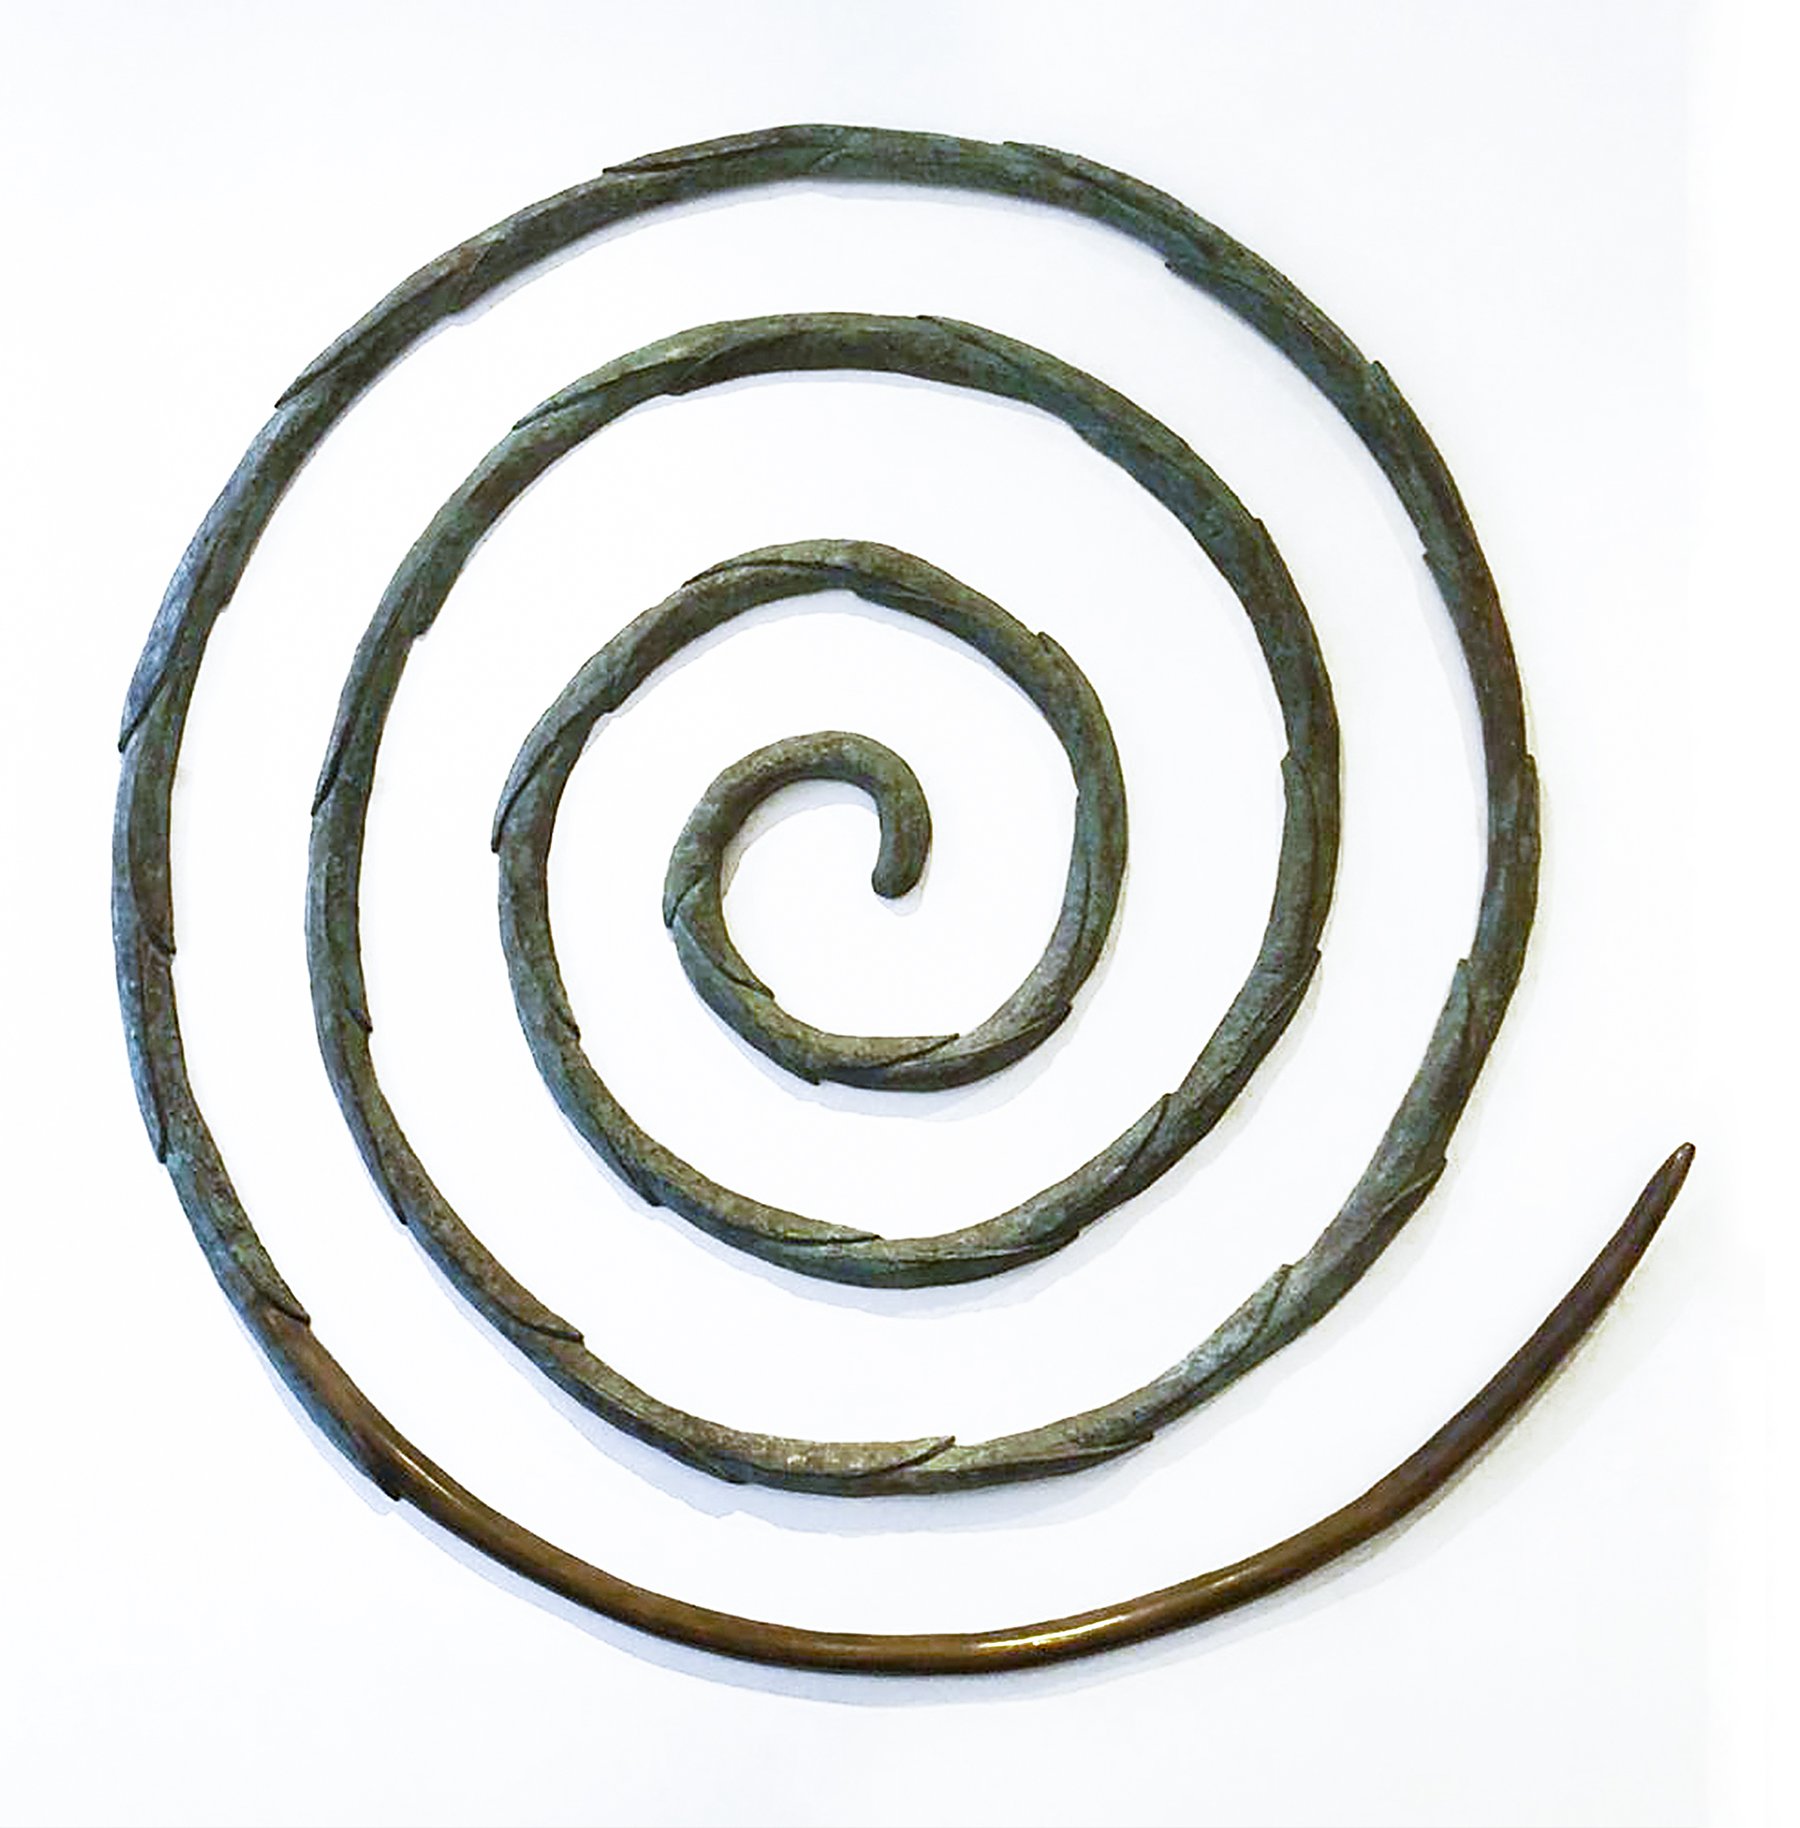  La Paradoja de Narciso, 2001  Espiral de Bronce  240 x 240 cm  